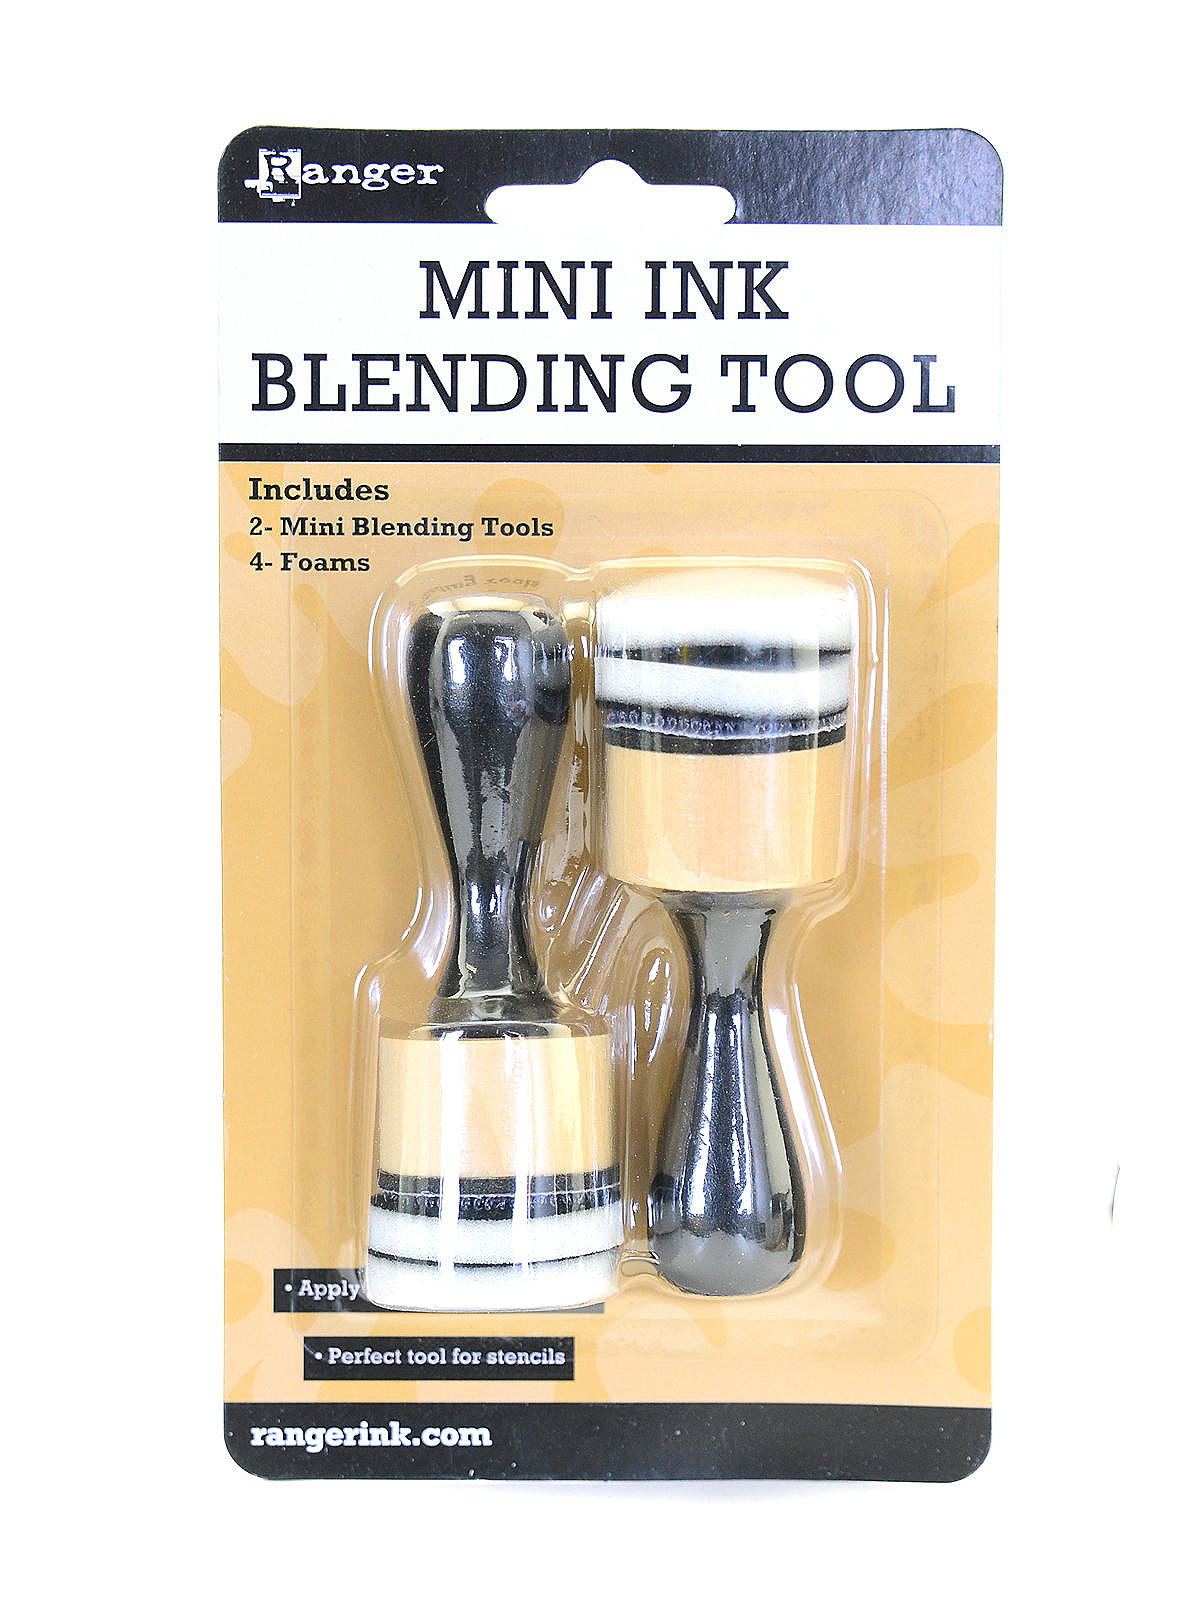 Mini Ink | MisterArt.com